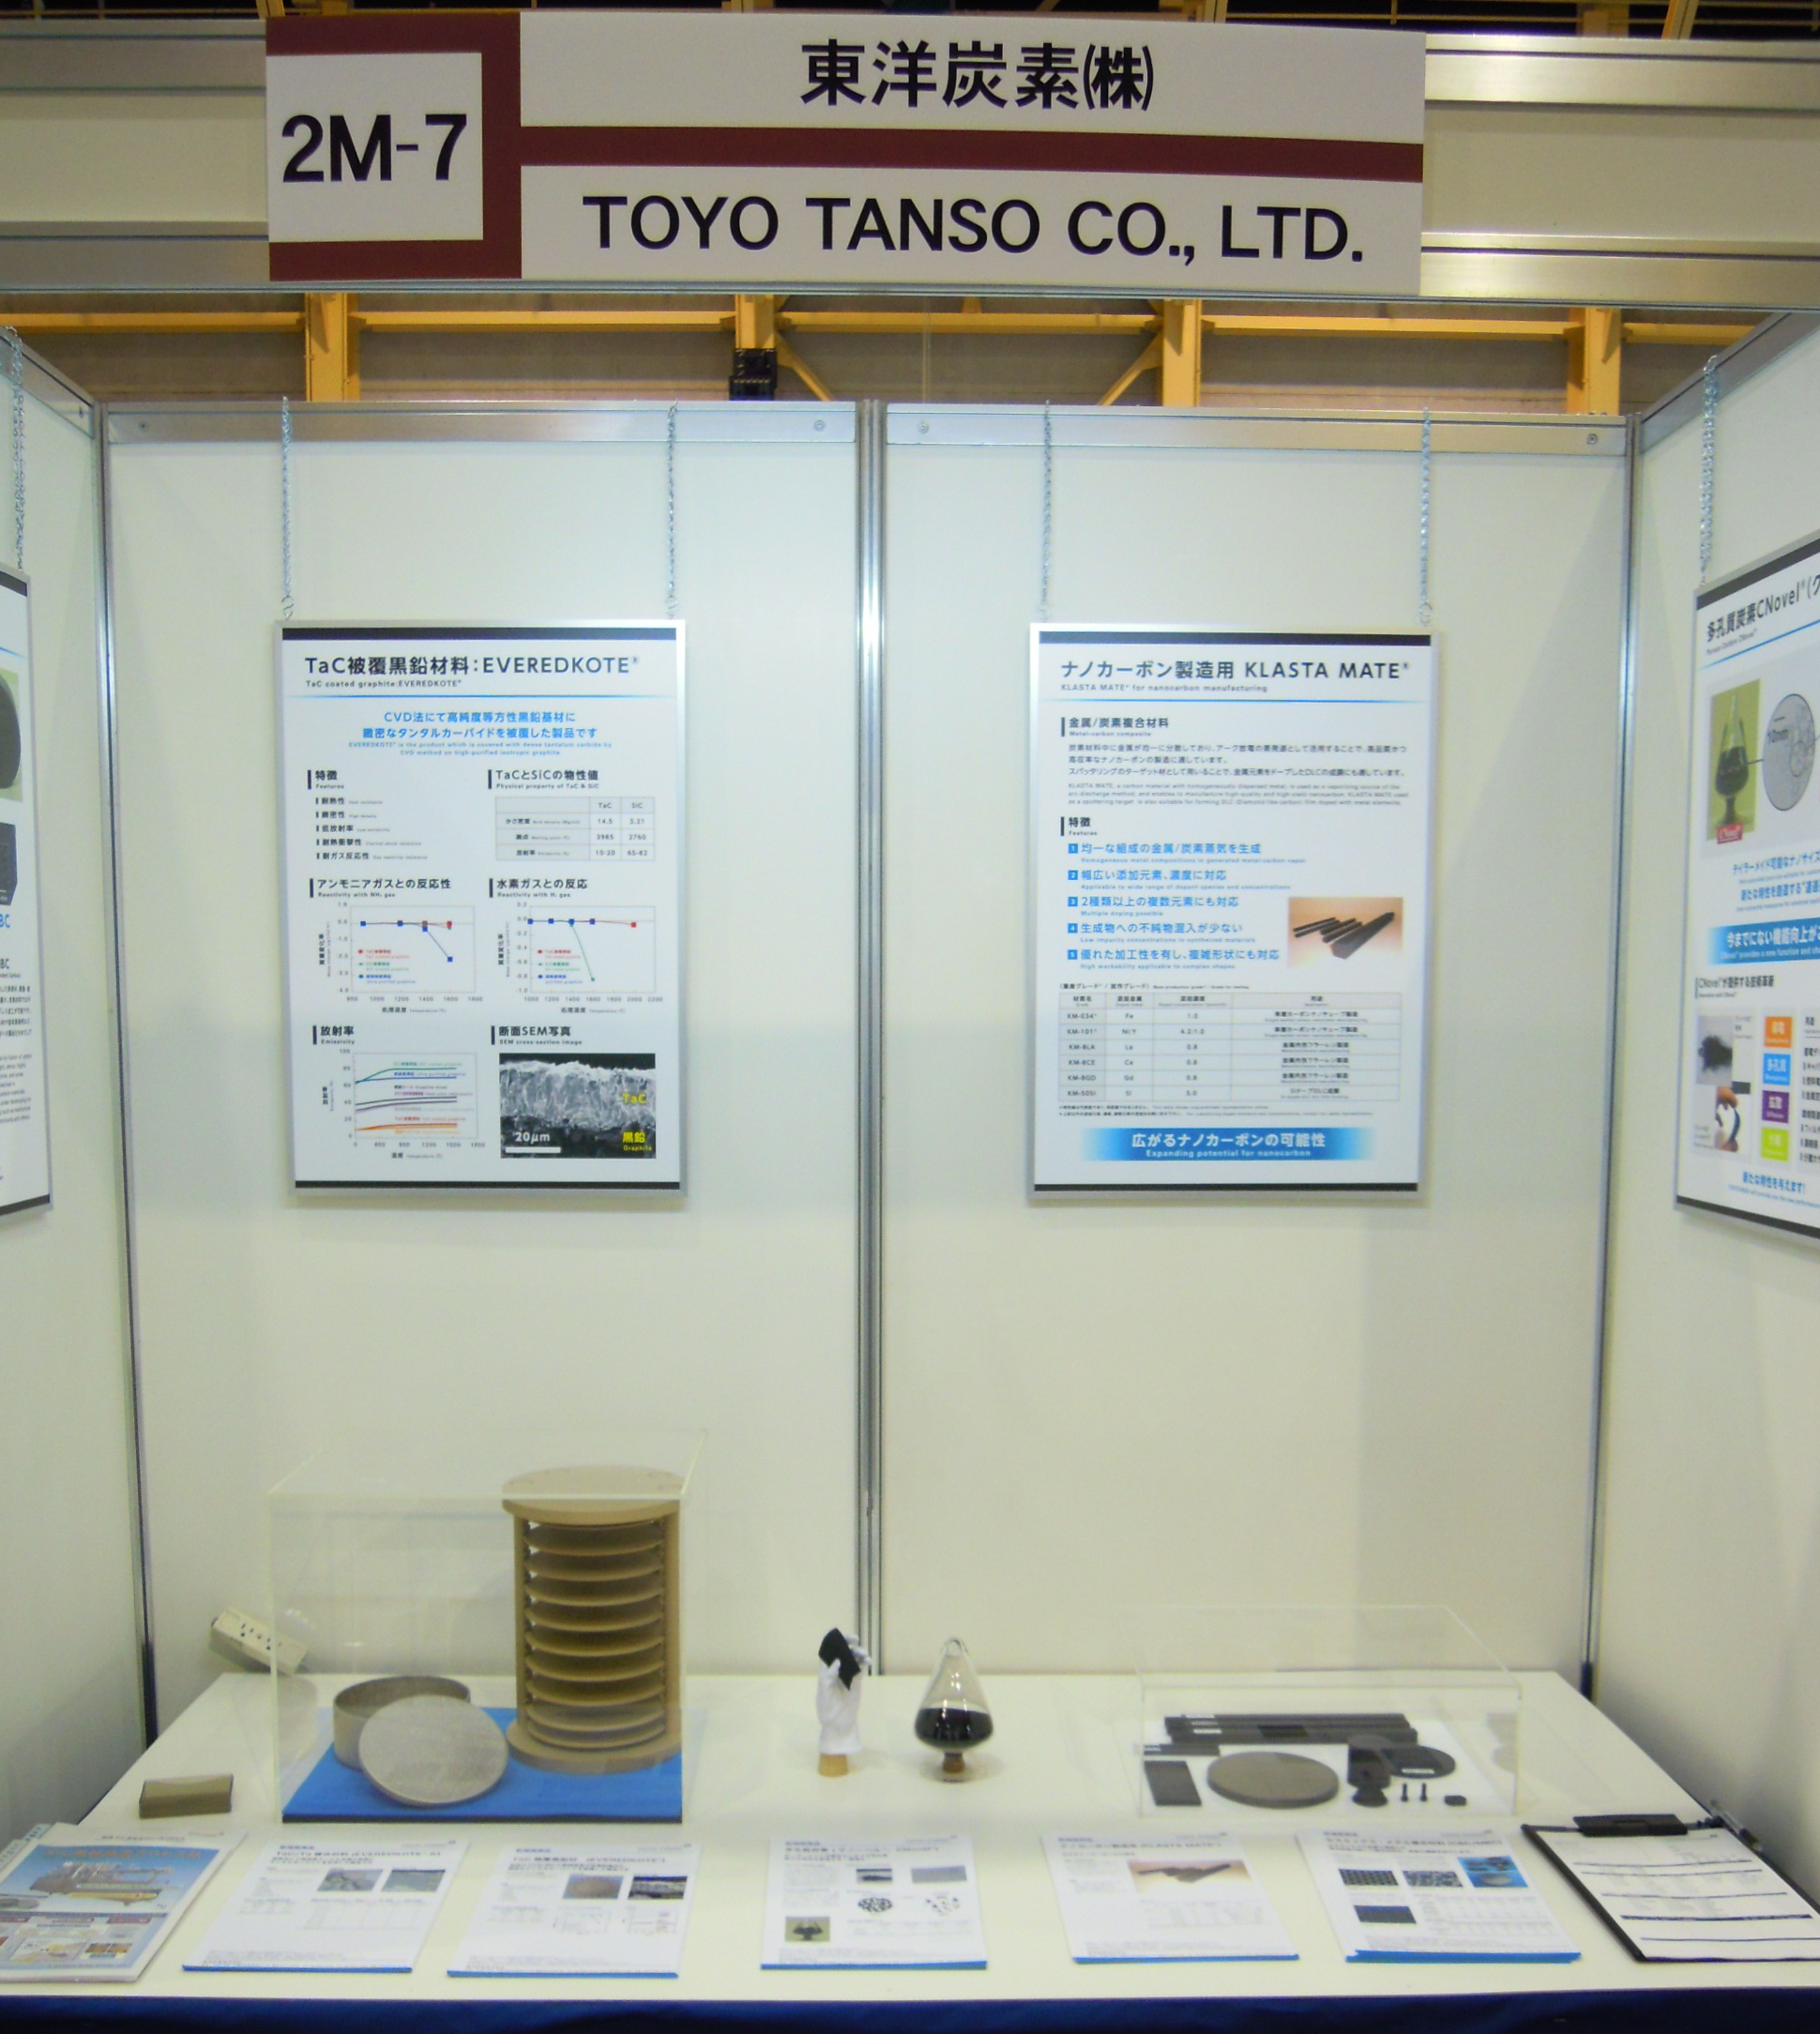 JSAP2013 東洋炭素展示写真